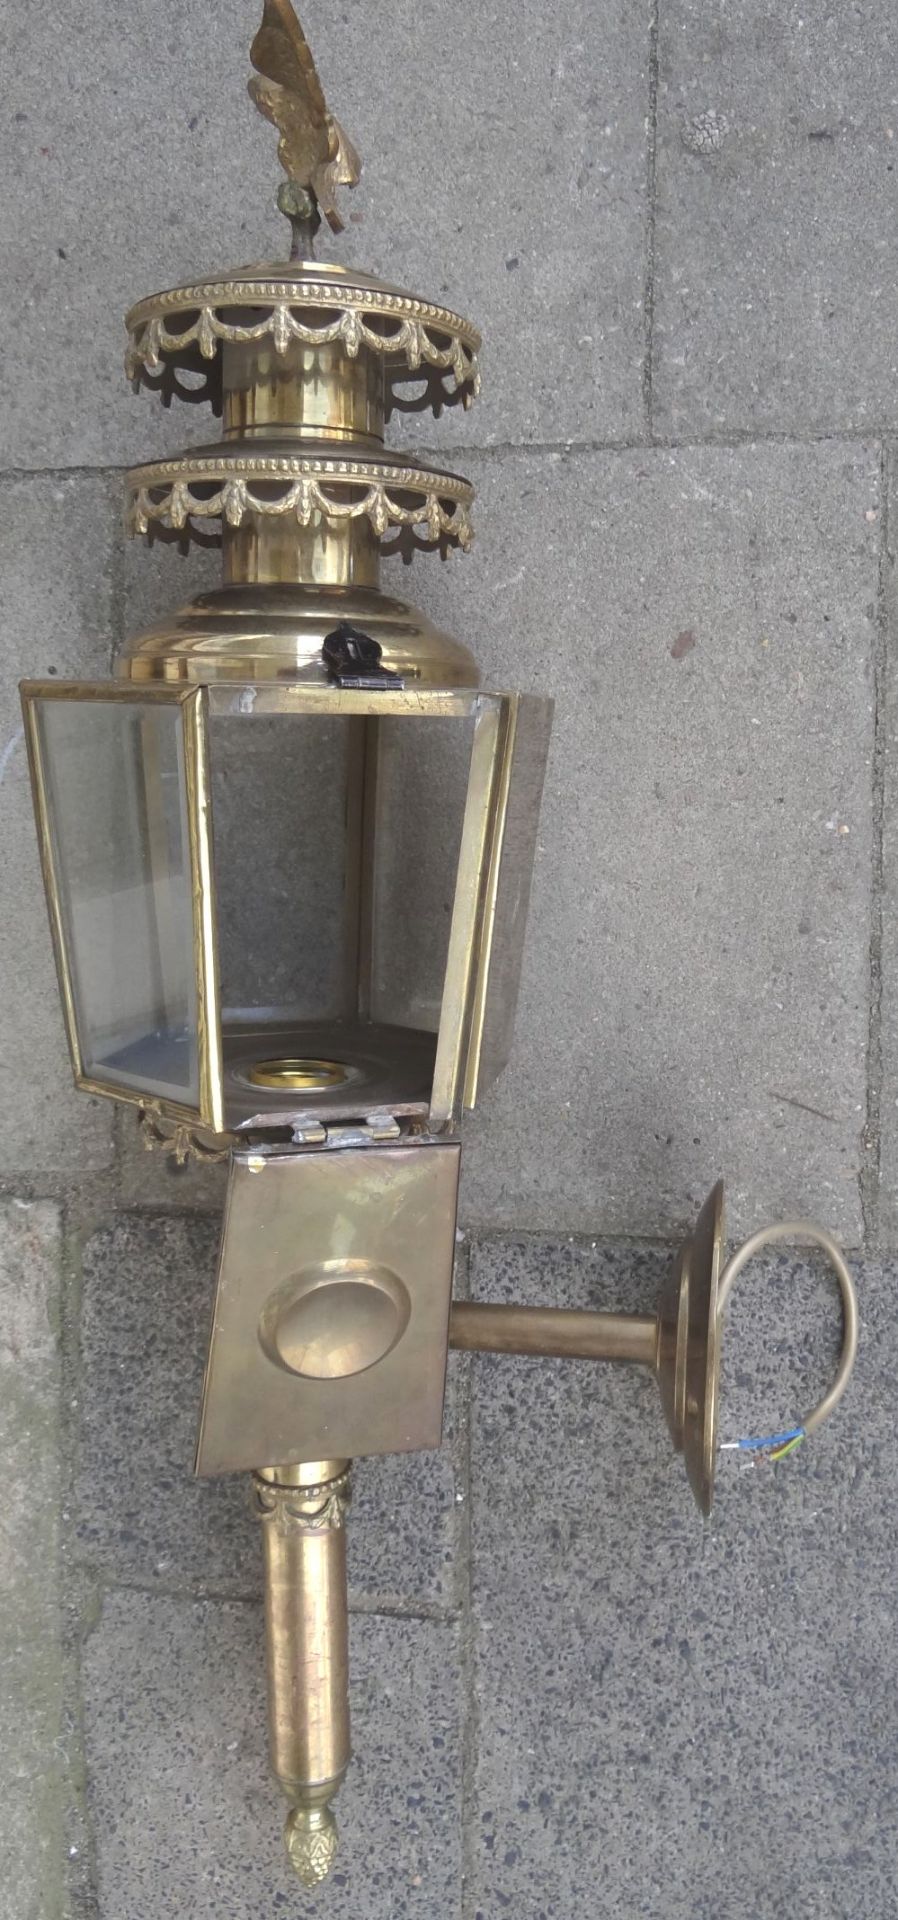 grosse, massive Kutschenlampe, Messing/Bronze, H-75 cm, B-28 cm, elektrisch, guter Zustand - Bild 5 aus 9